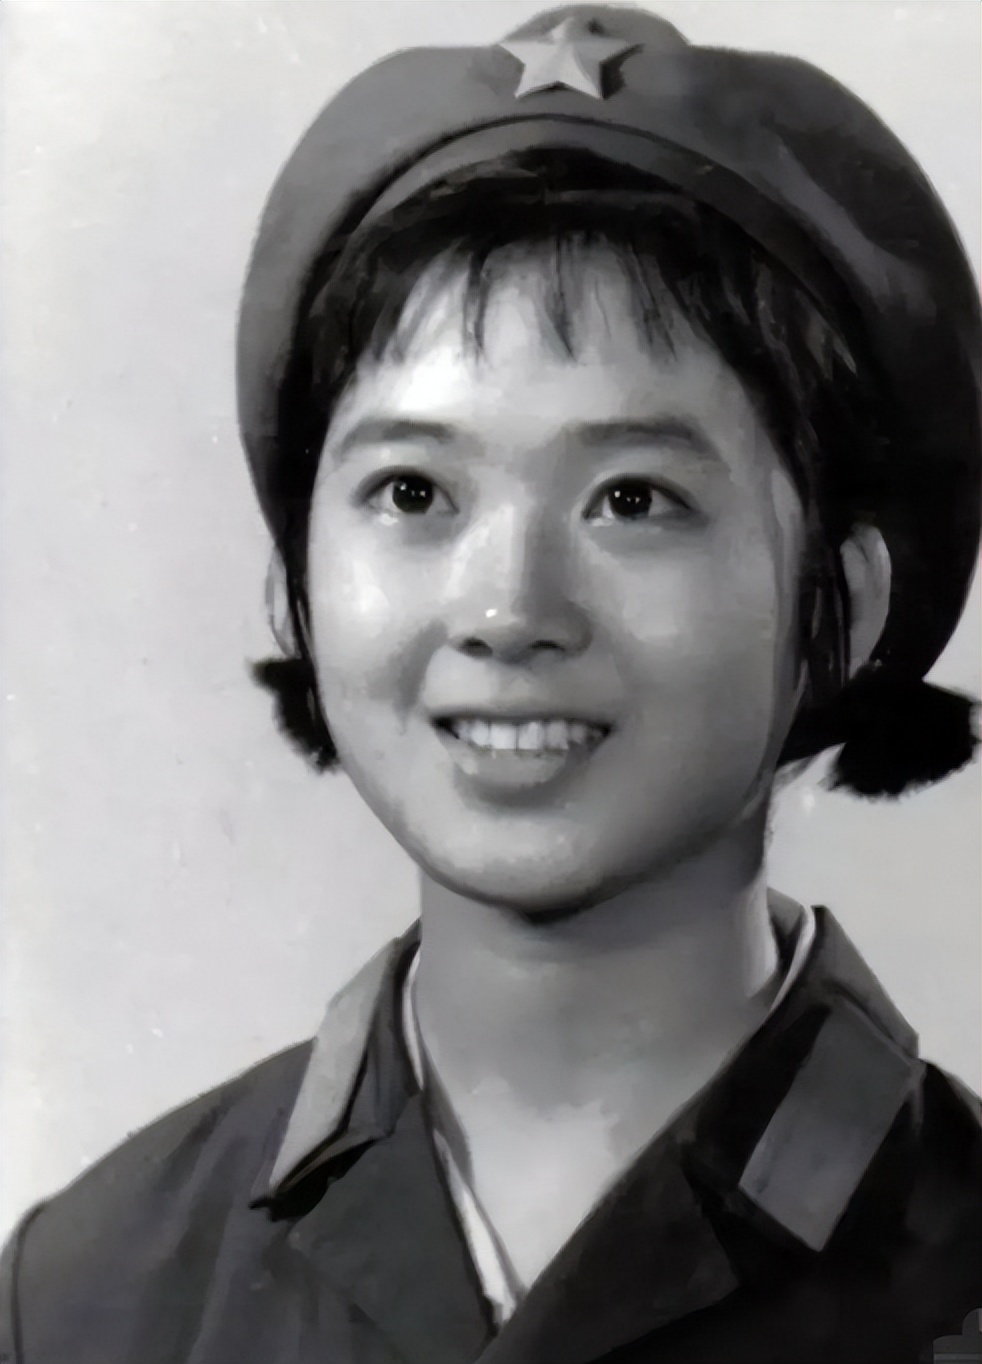 女兵70年代军装照图片